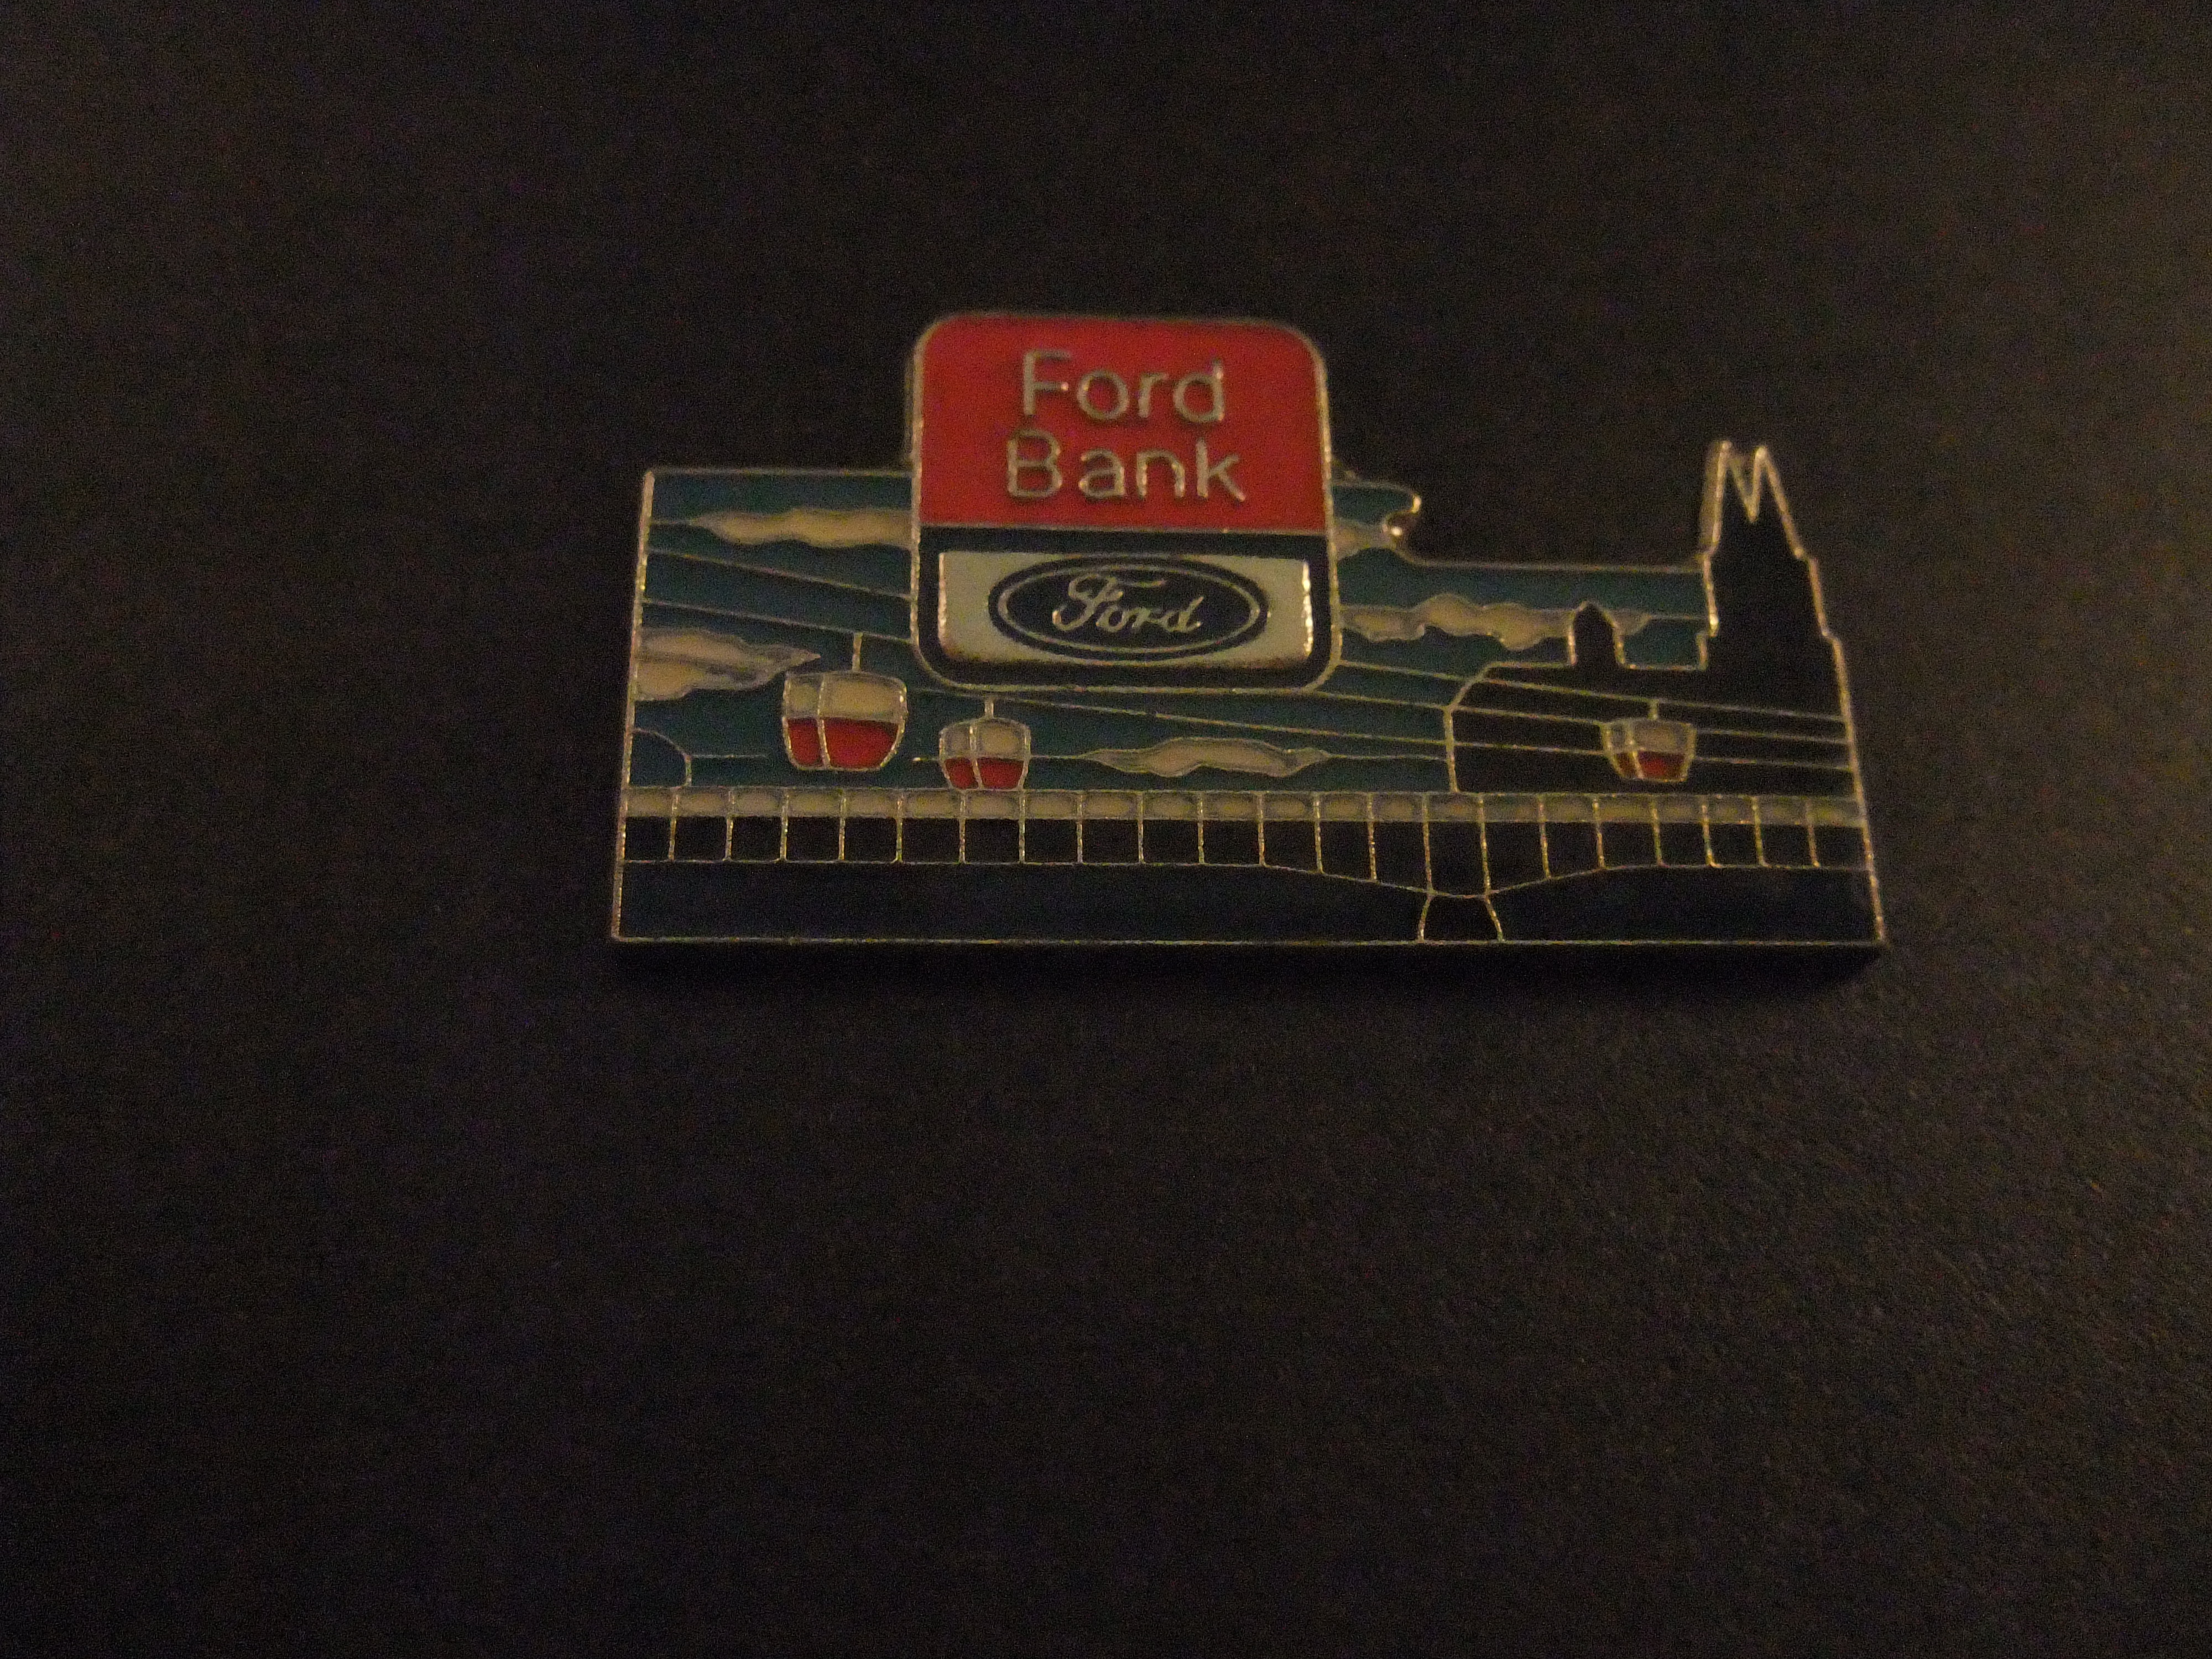 Ford Bank Ford Credit autofinanciering ( Kabelbaan over de Rijn in Keulen)